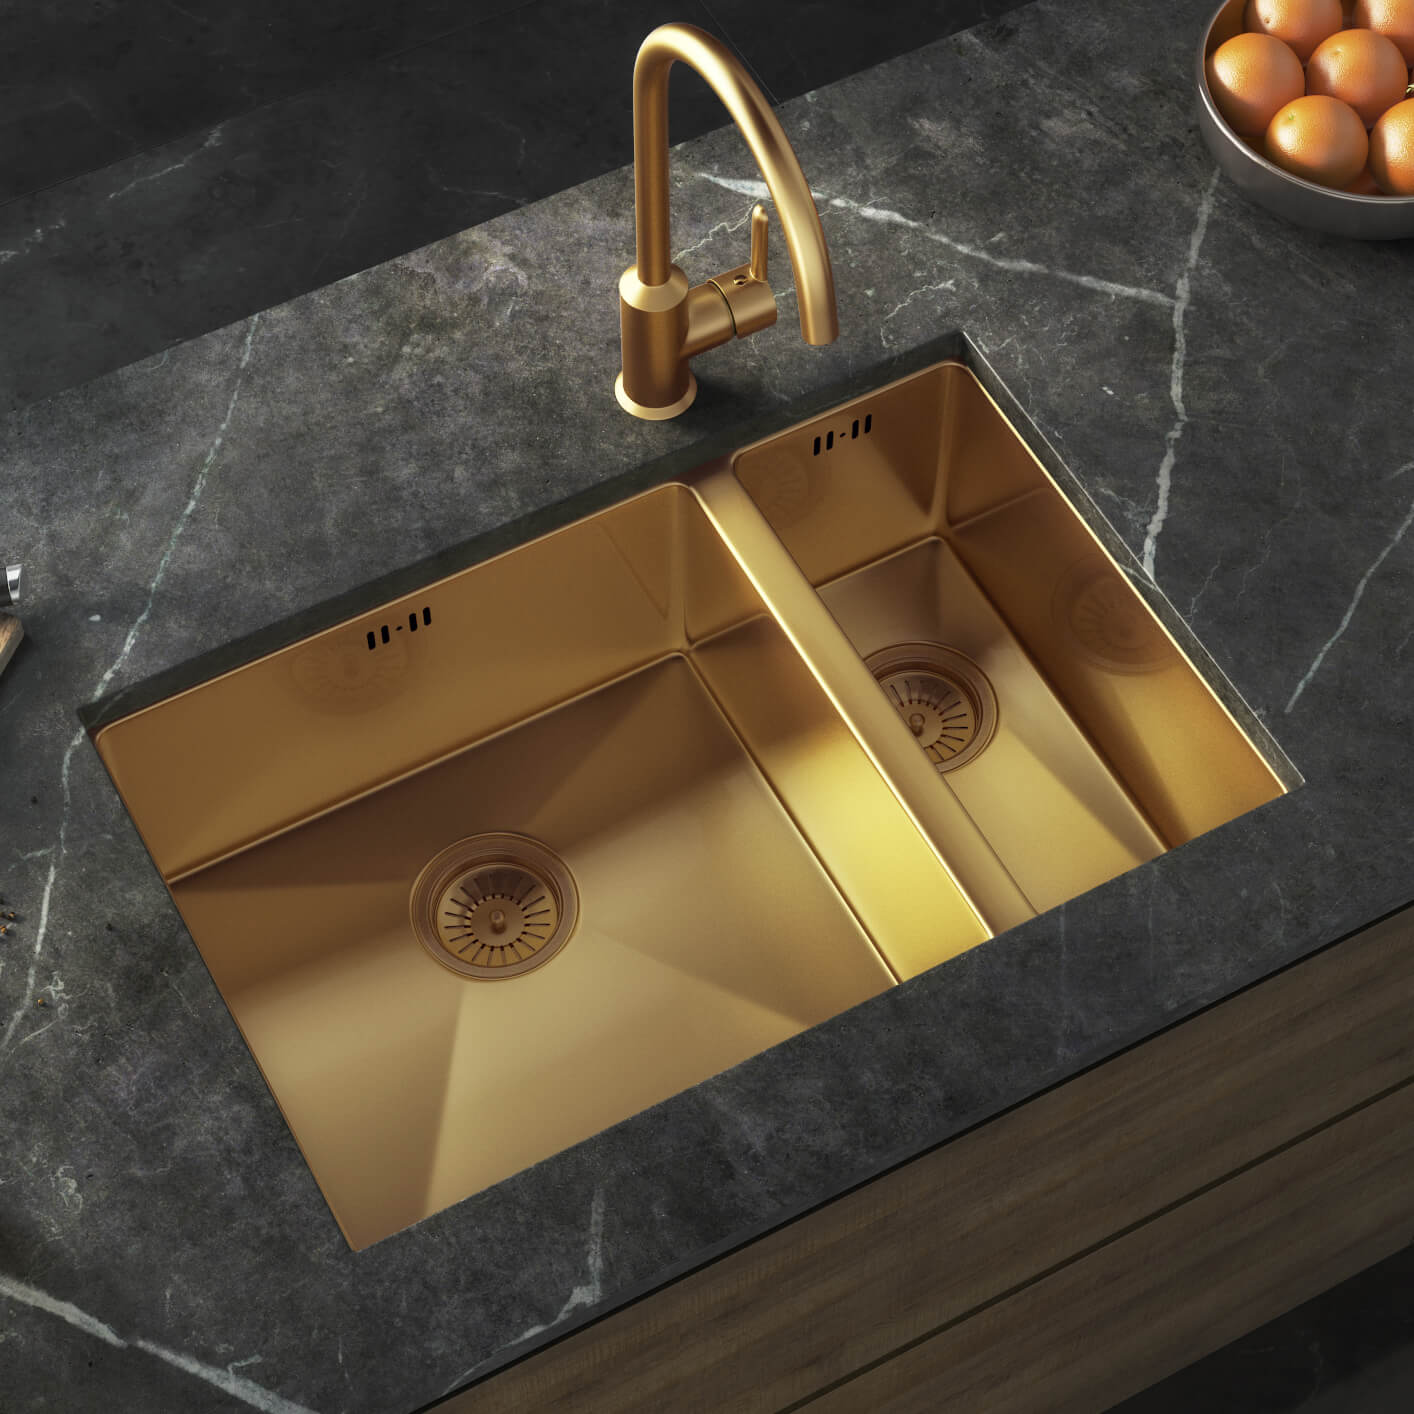 Waste Designer 450 x 390mm Single Bowl Stainless Steel Undermount Kitchen Sink